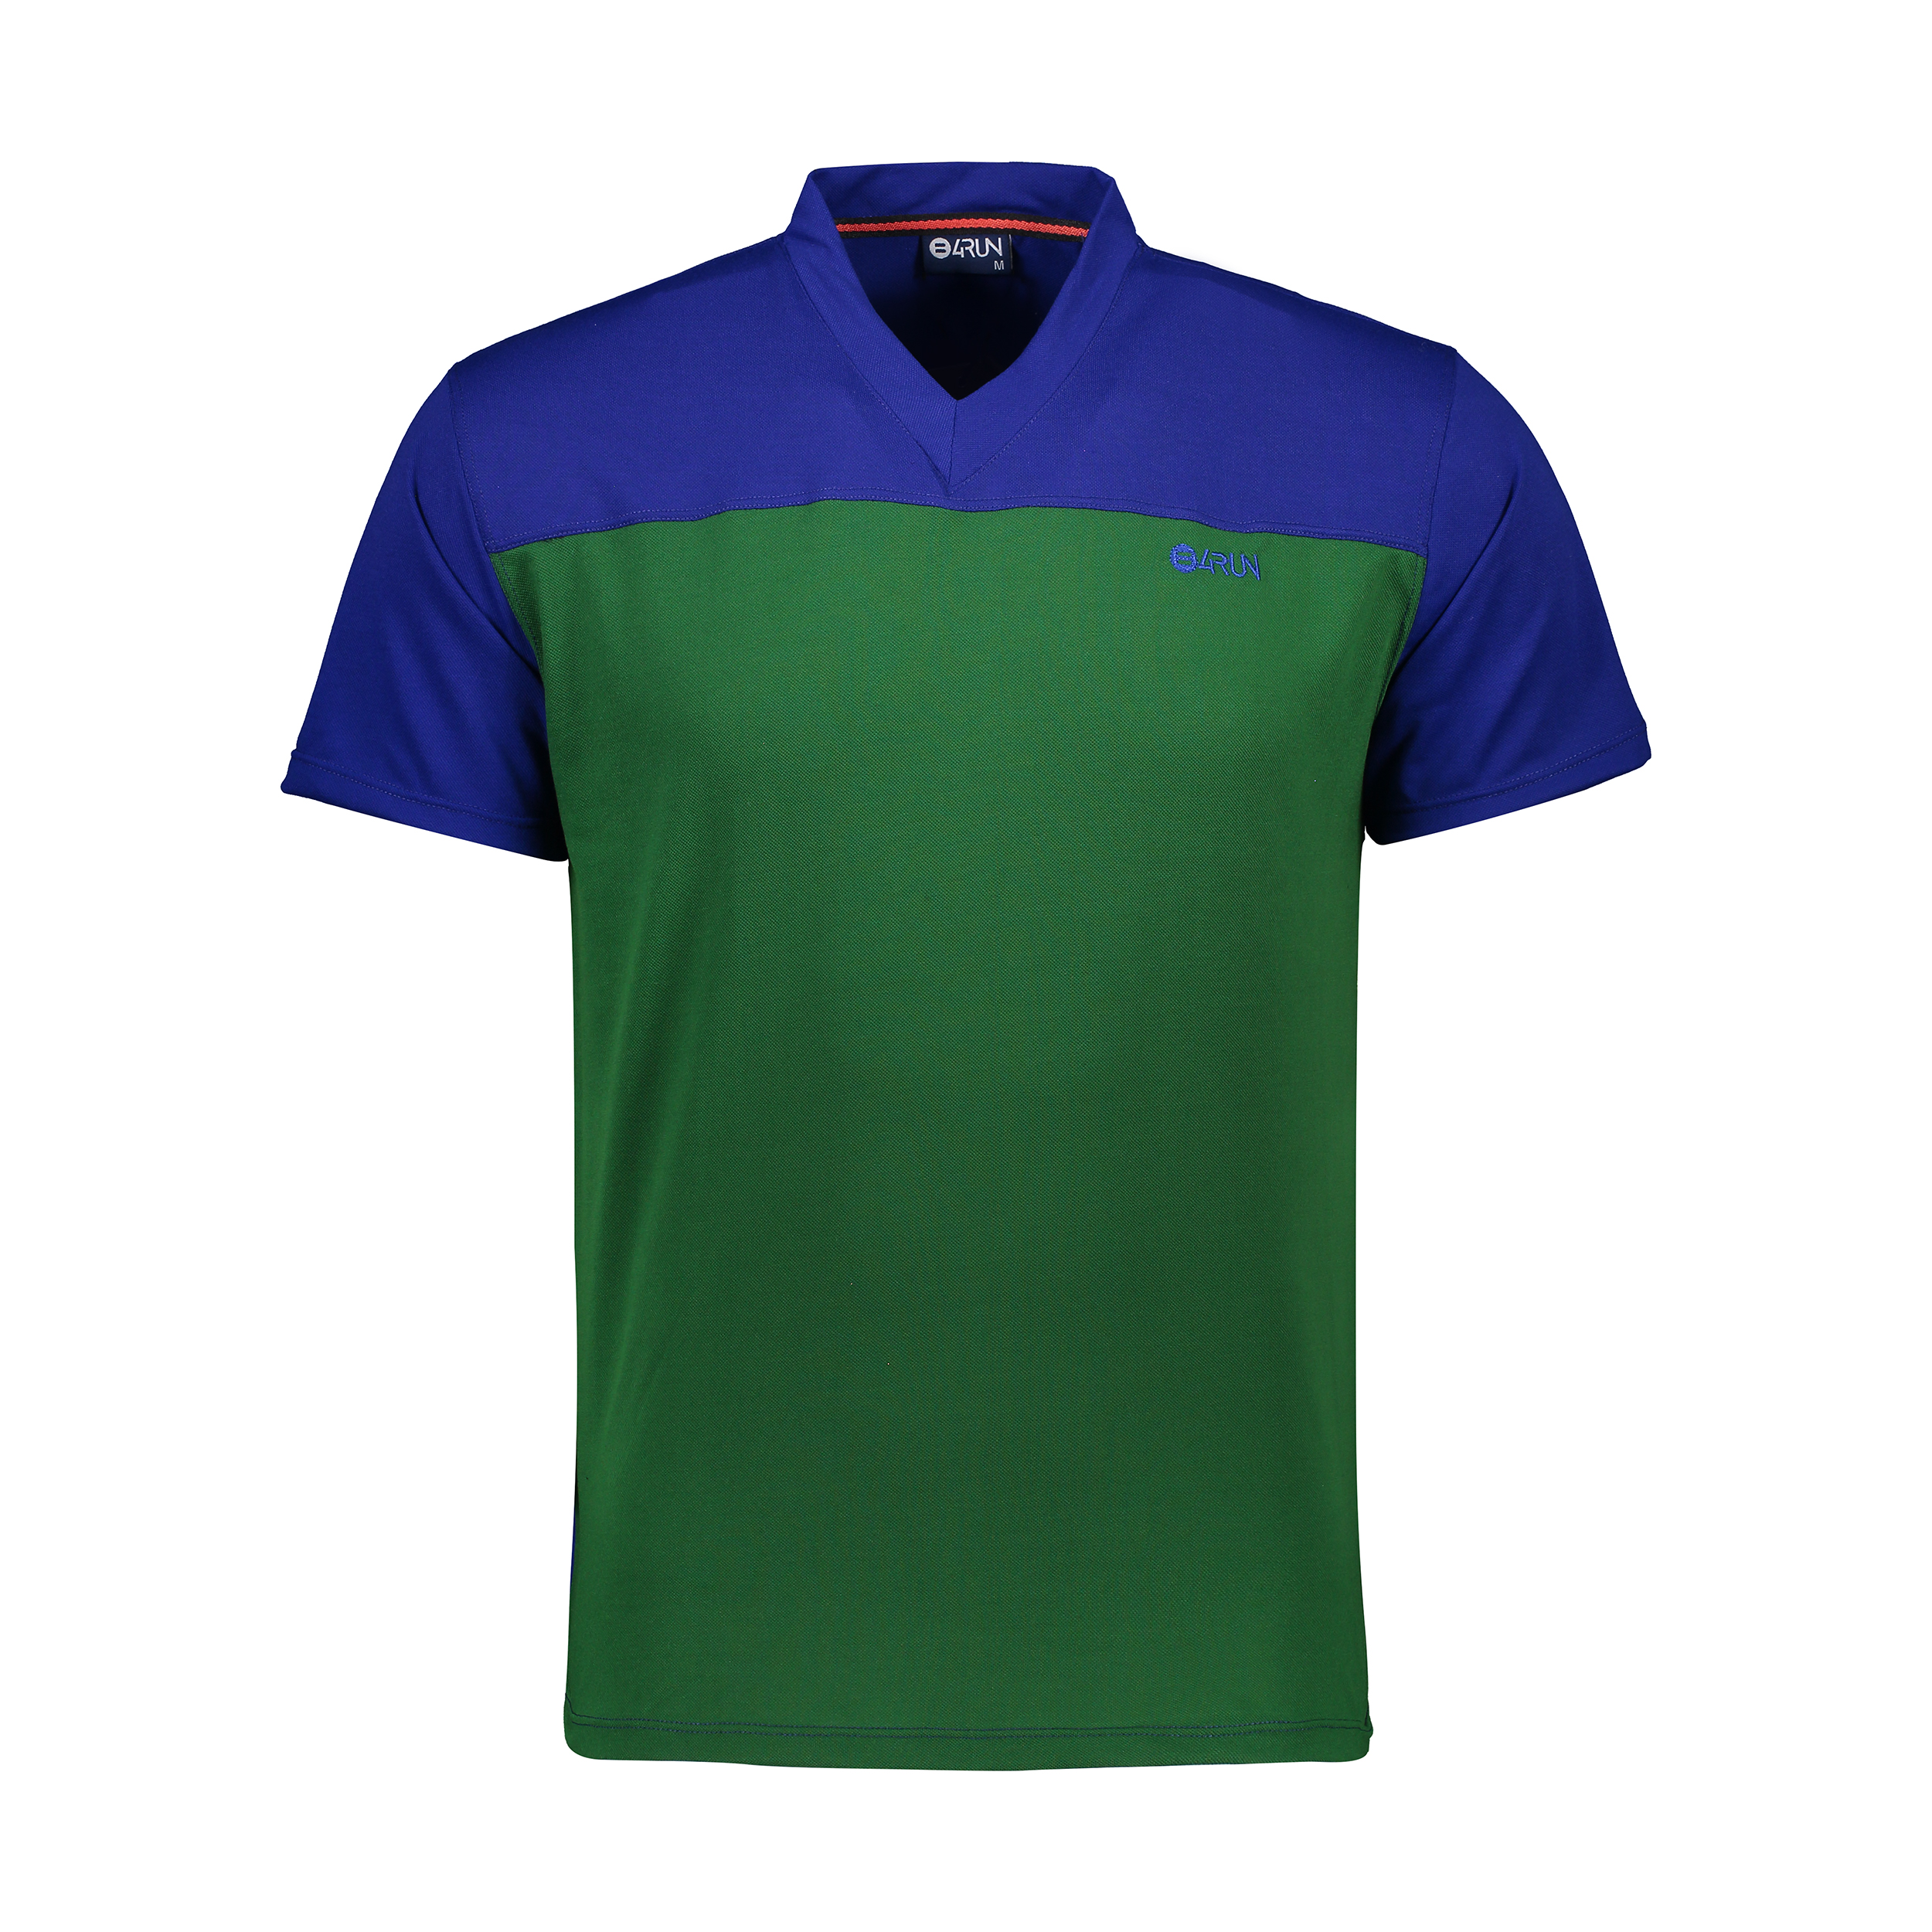 تی شرت ورزشی مردانه بی فور ران مدل 980317-5843 - آبی- سبز - 1